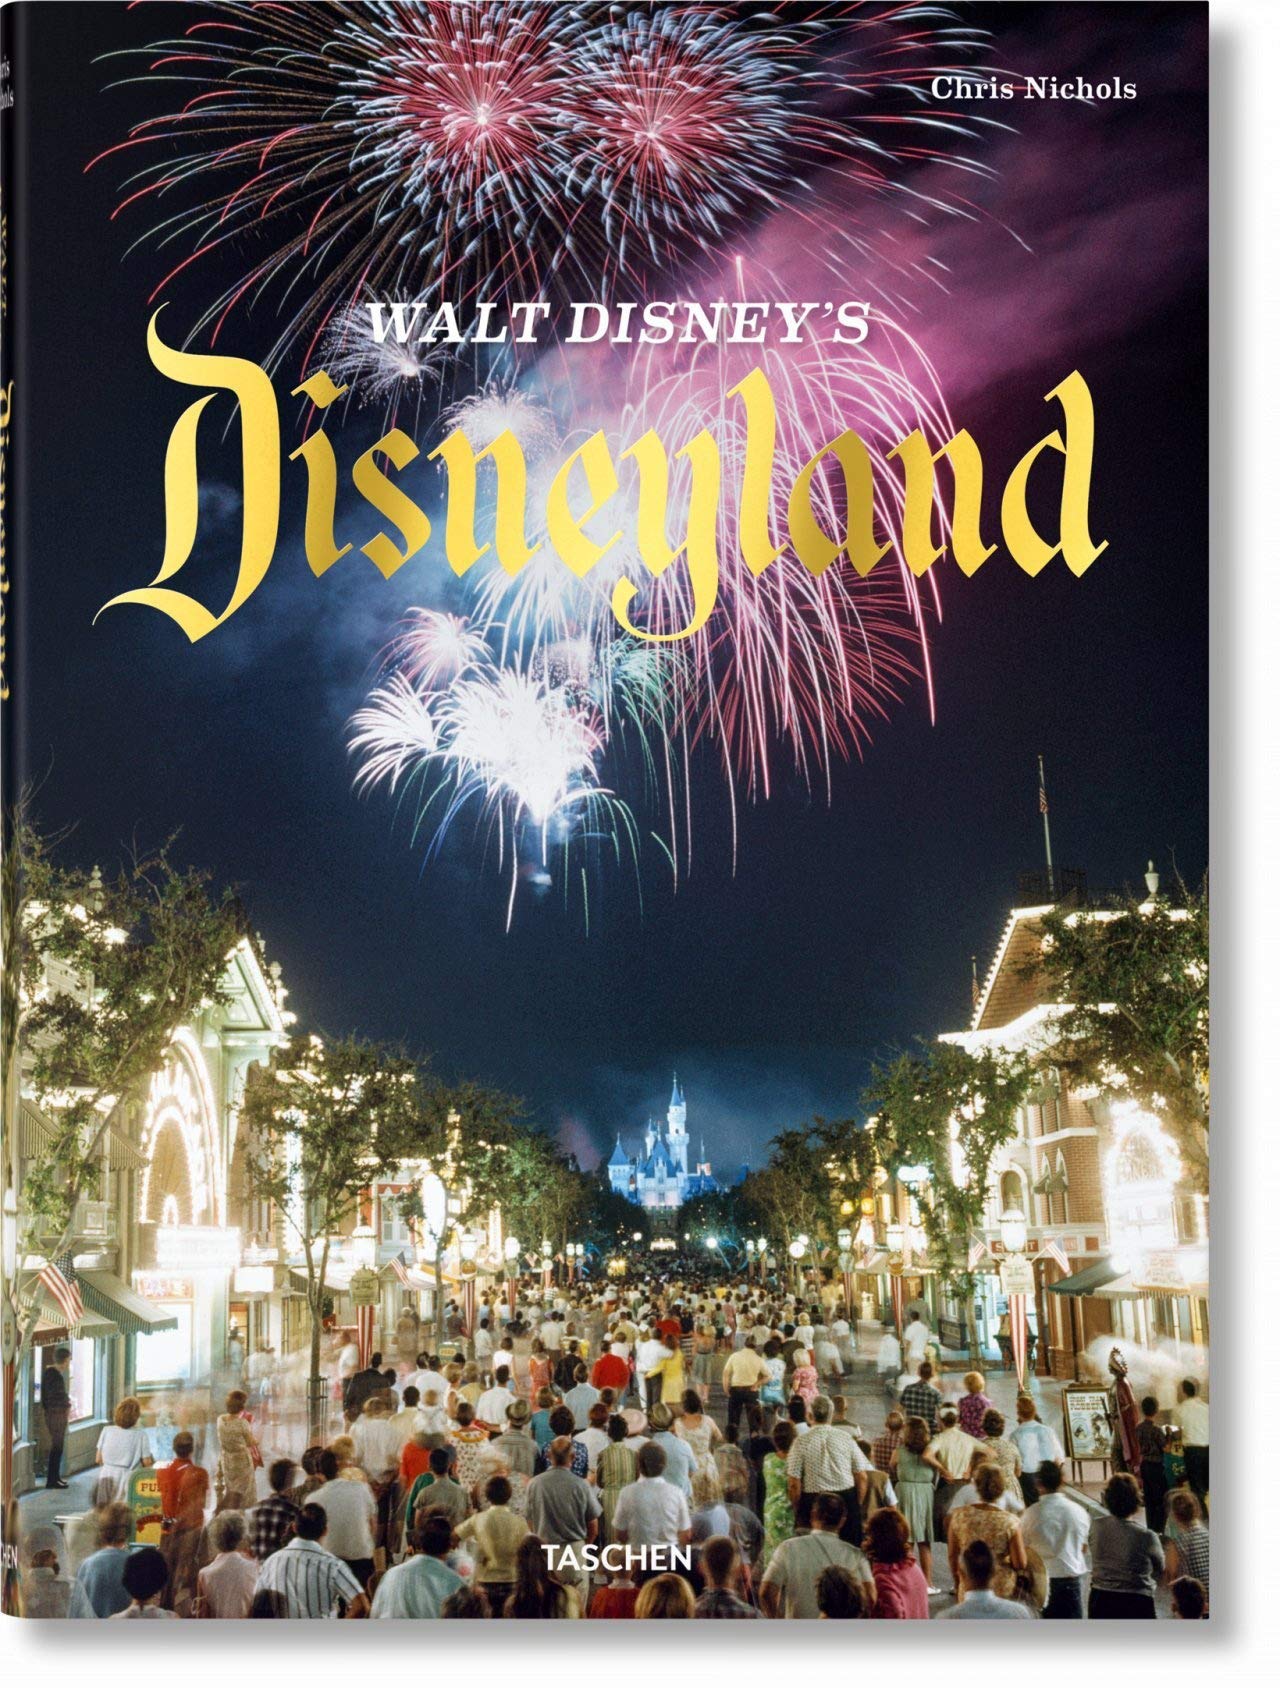 Walt Disney's Disneyland - Chris Nichols (Taschen)